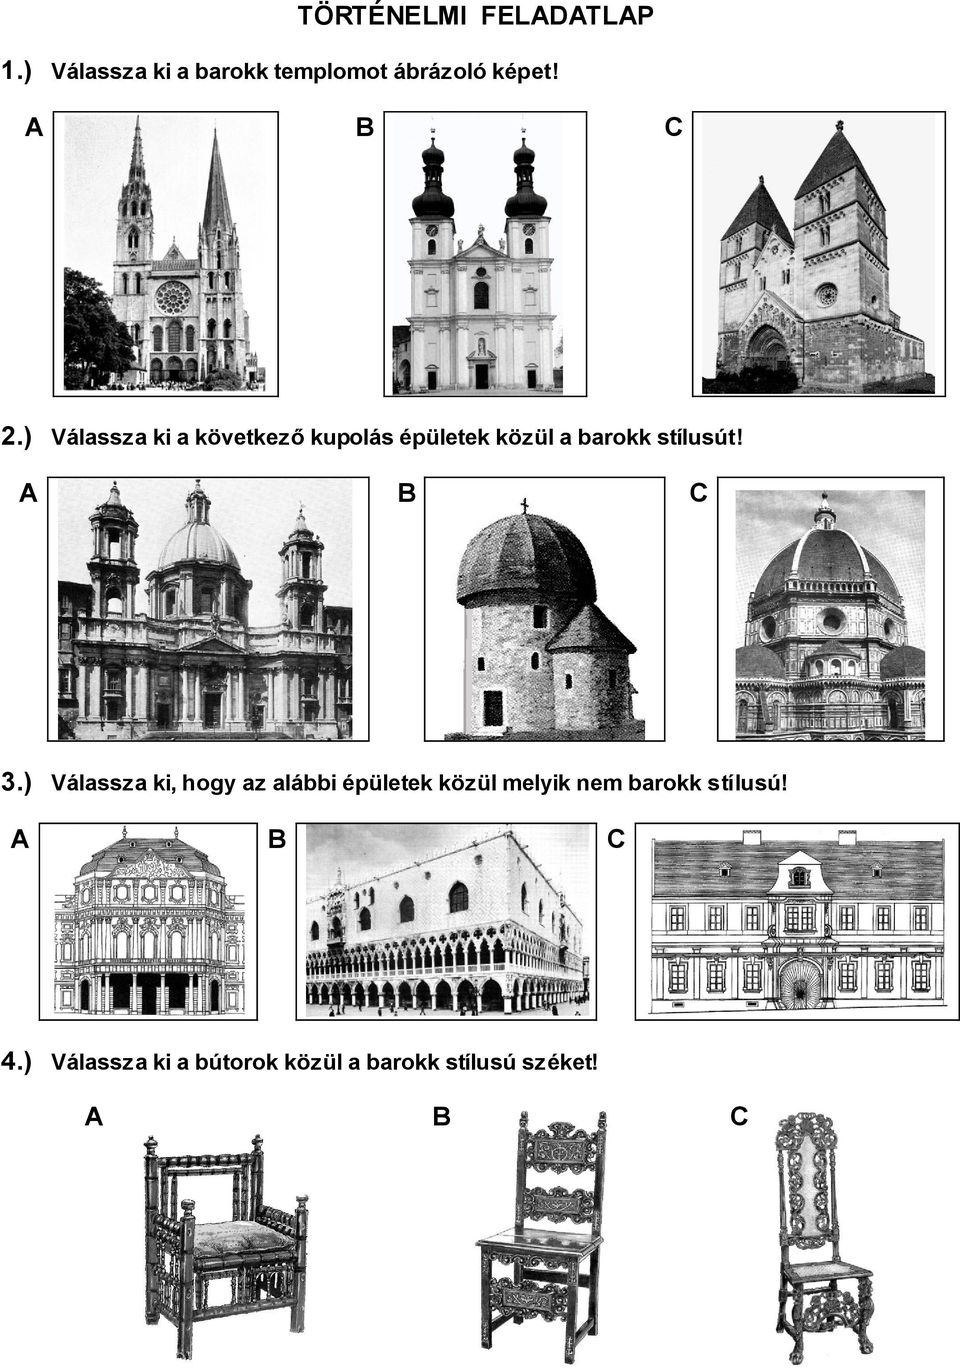 ) Válassza ki a következő kupolás épületek közül a barokk stílusút!